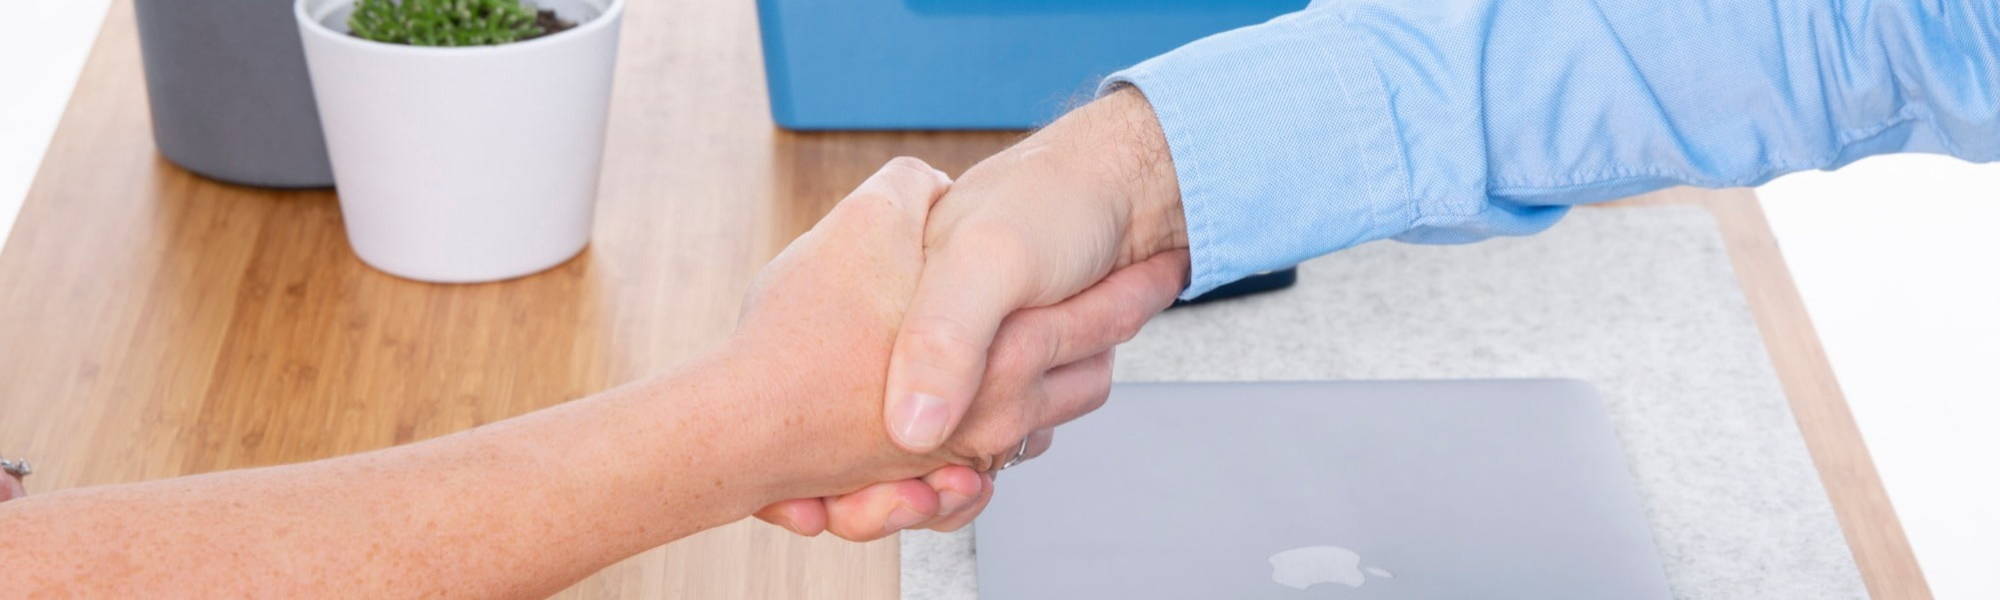 client - handshake - agreement - business - meeting - DukeMed